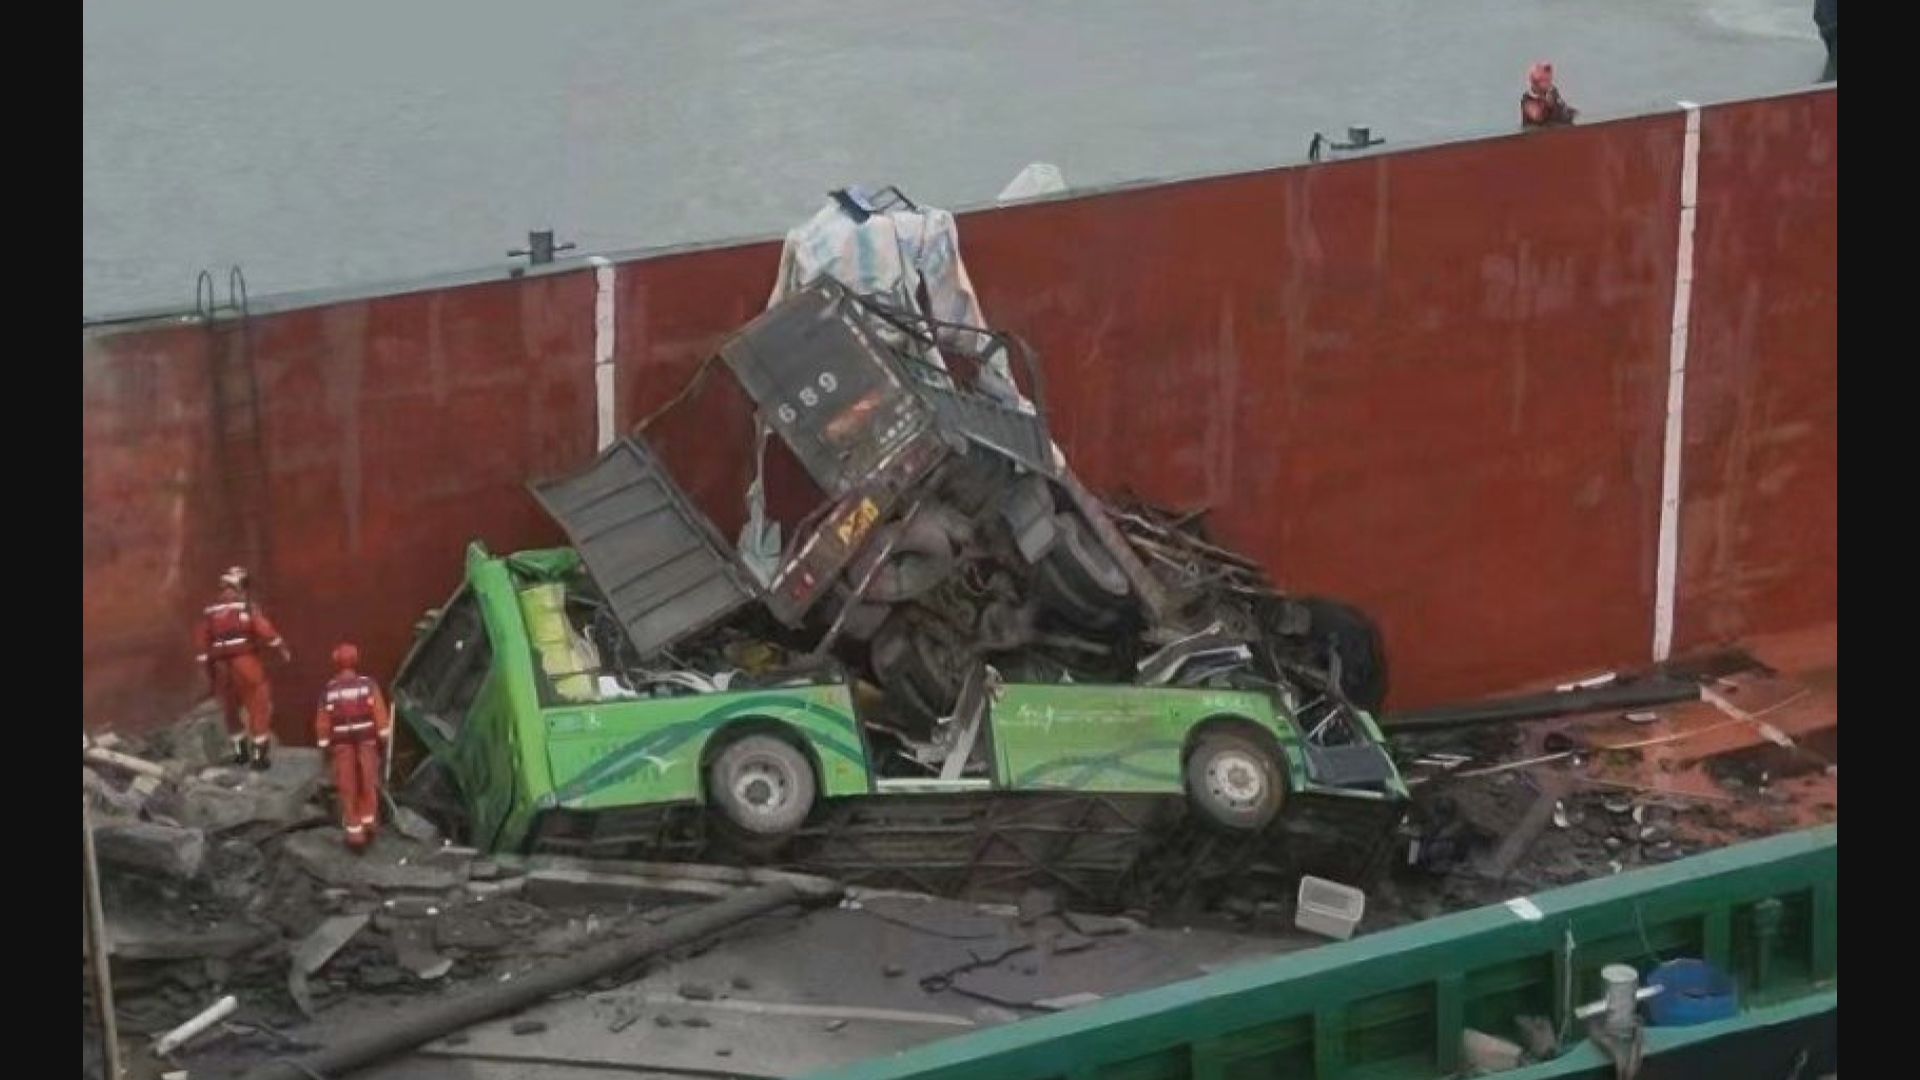 南沙貨船撞斷橋 有車輛墮下 兩死三人失蹤